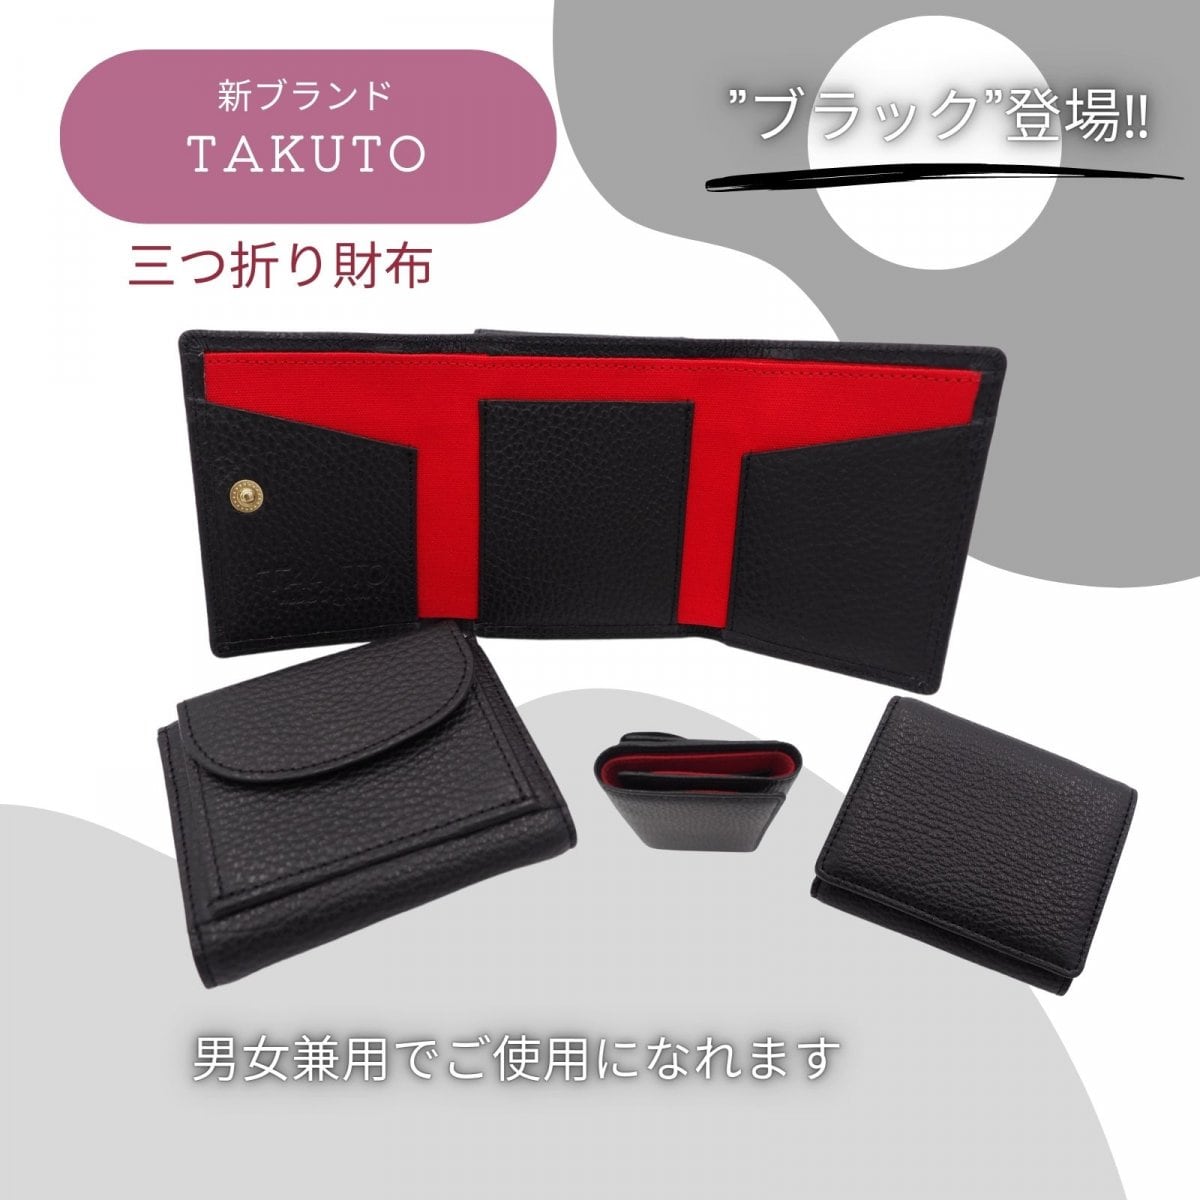 財布/新ブランド【TAKUTO】/三つ折りコンパクトで可愛い